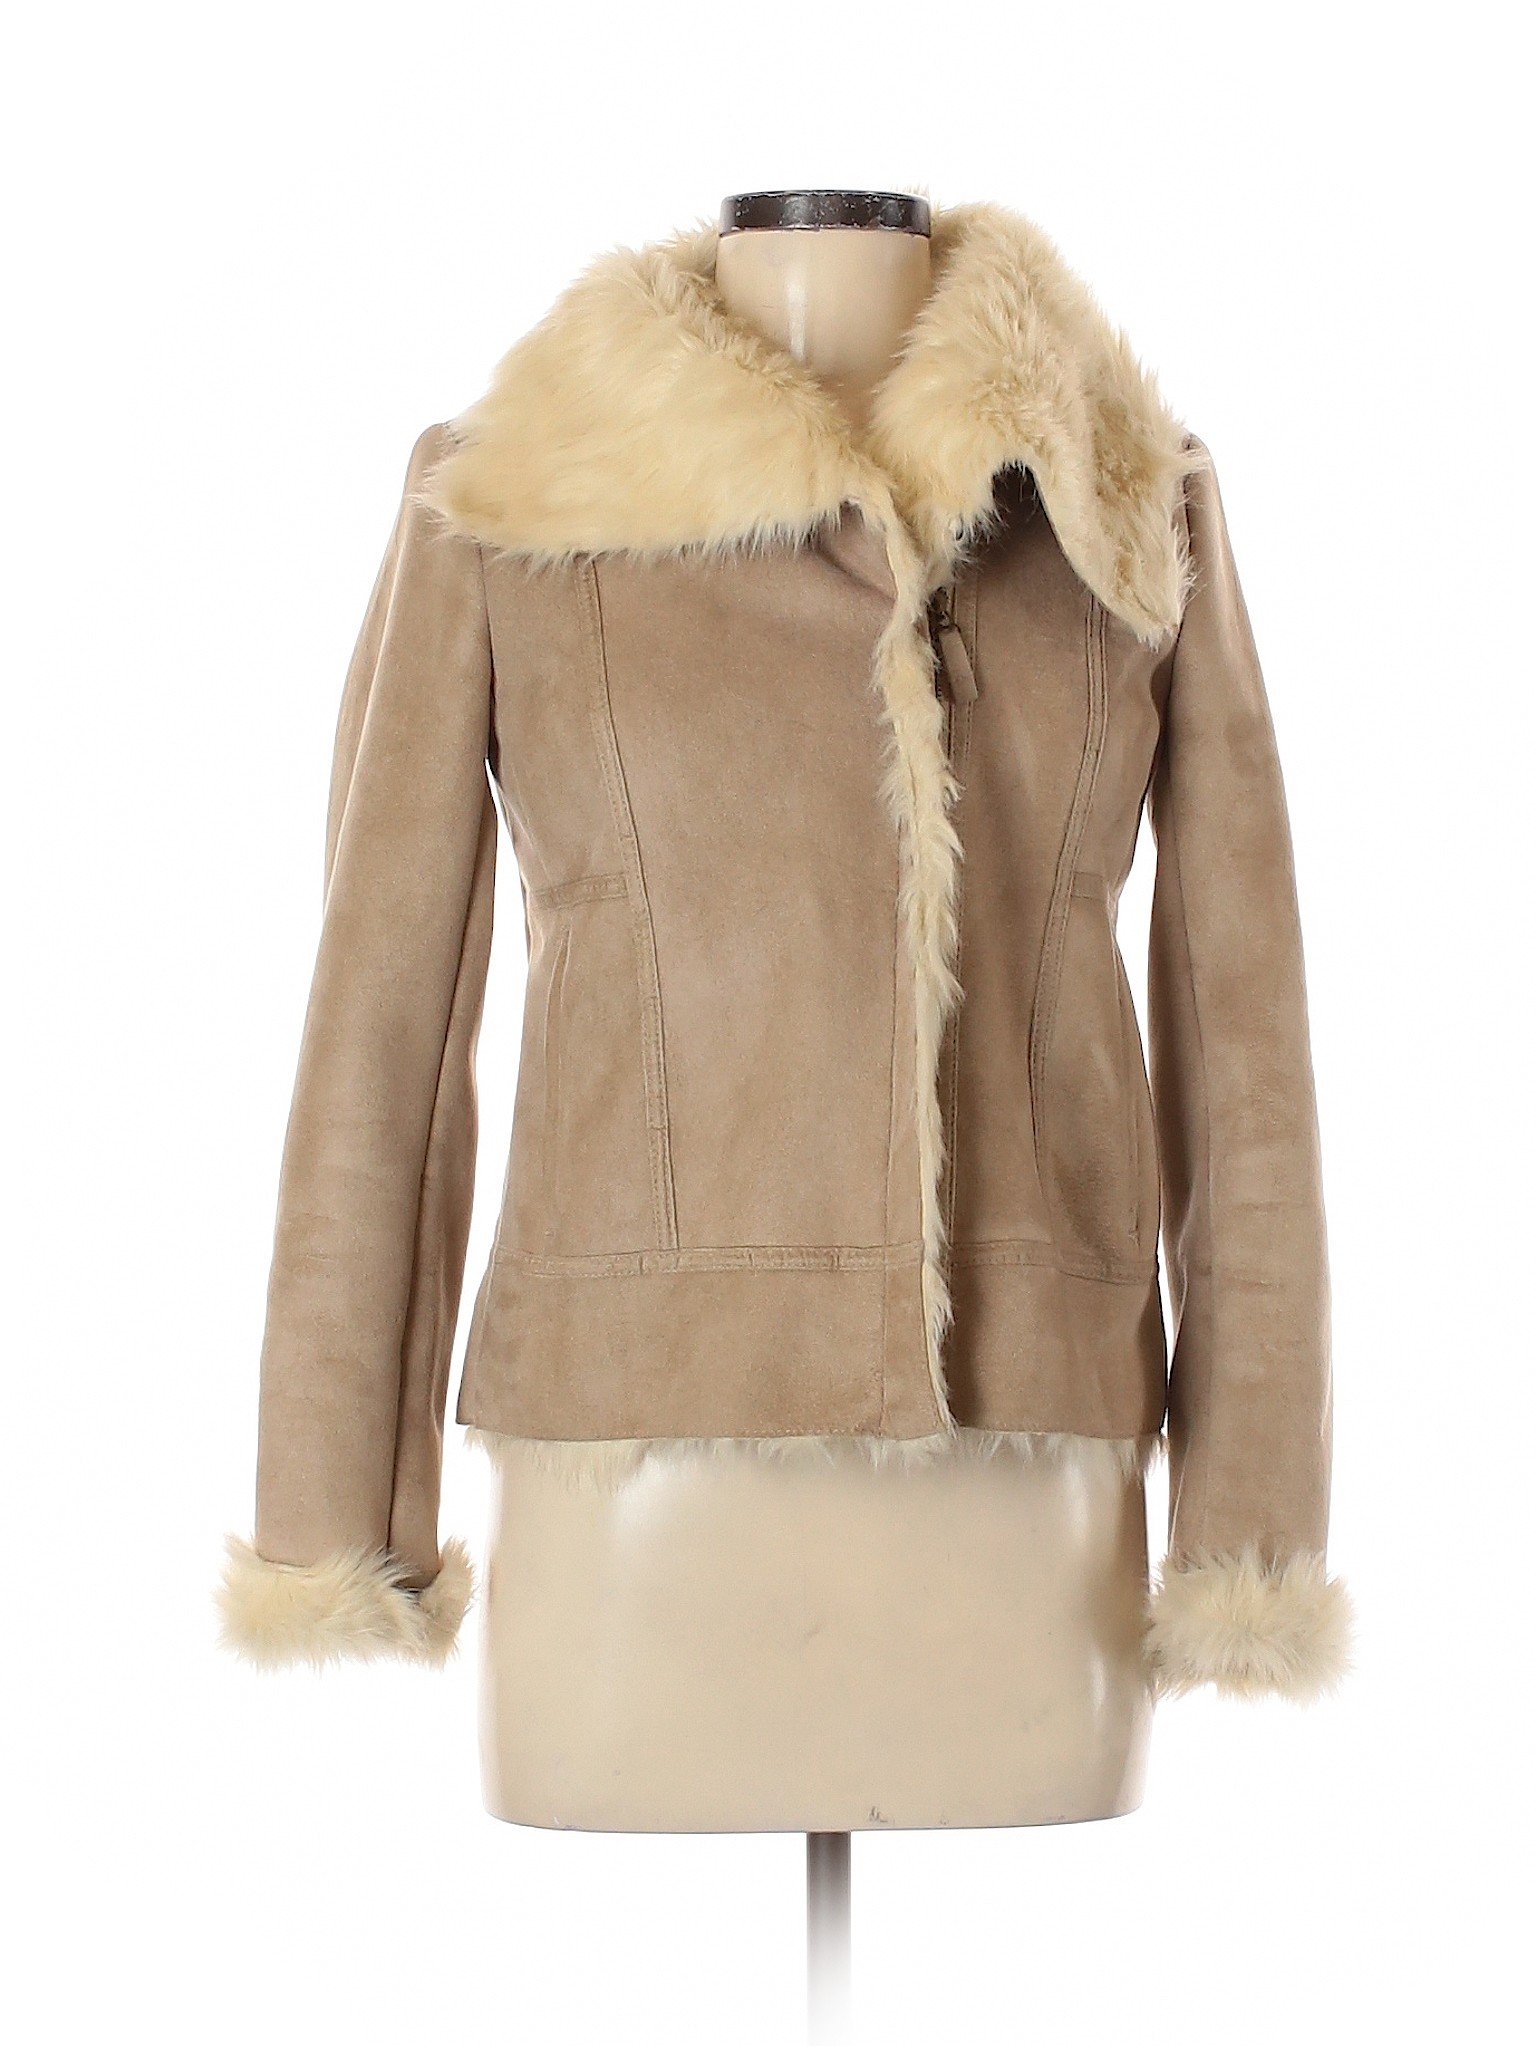 Ann Taylor Women Brown Faux Leather Jacket XS | eBay